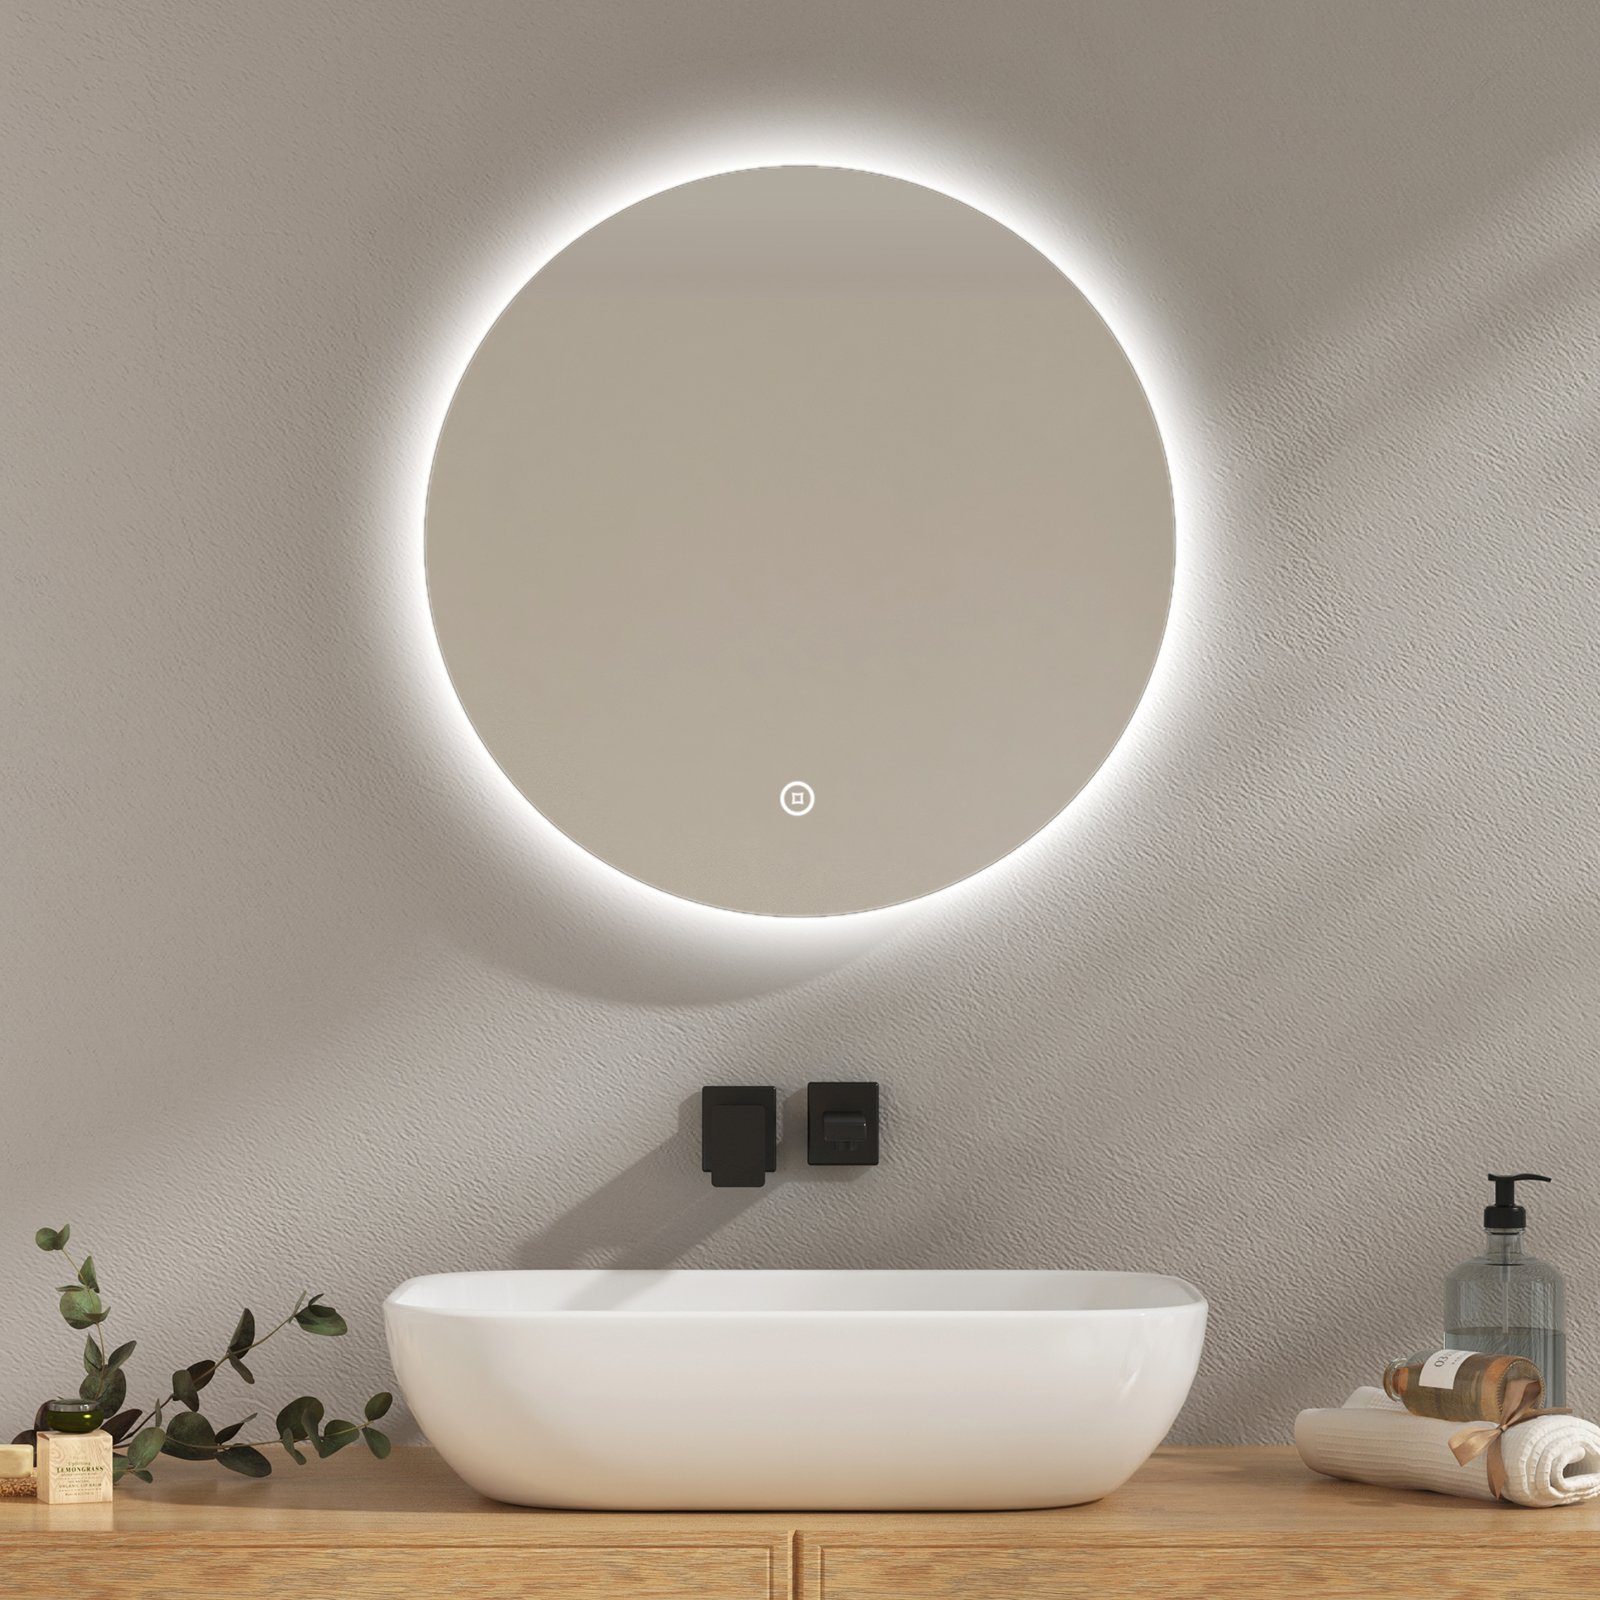 Badspiegel mit Spiegel EMKE Touchschalter Rahmenloser Spiegel Runder Badspigel Beleuchtung, EMKE mit